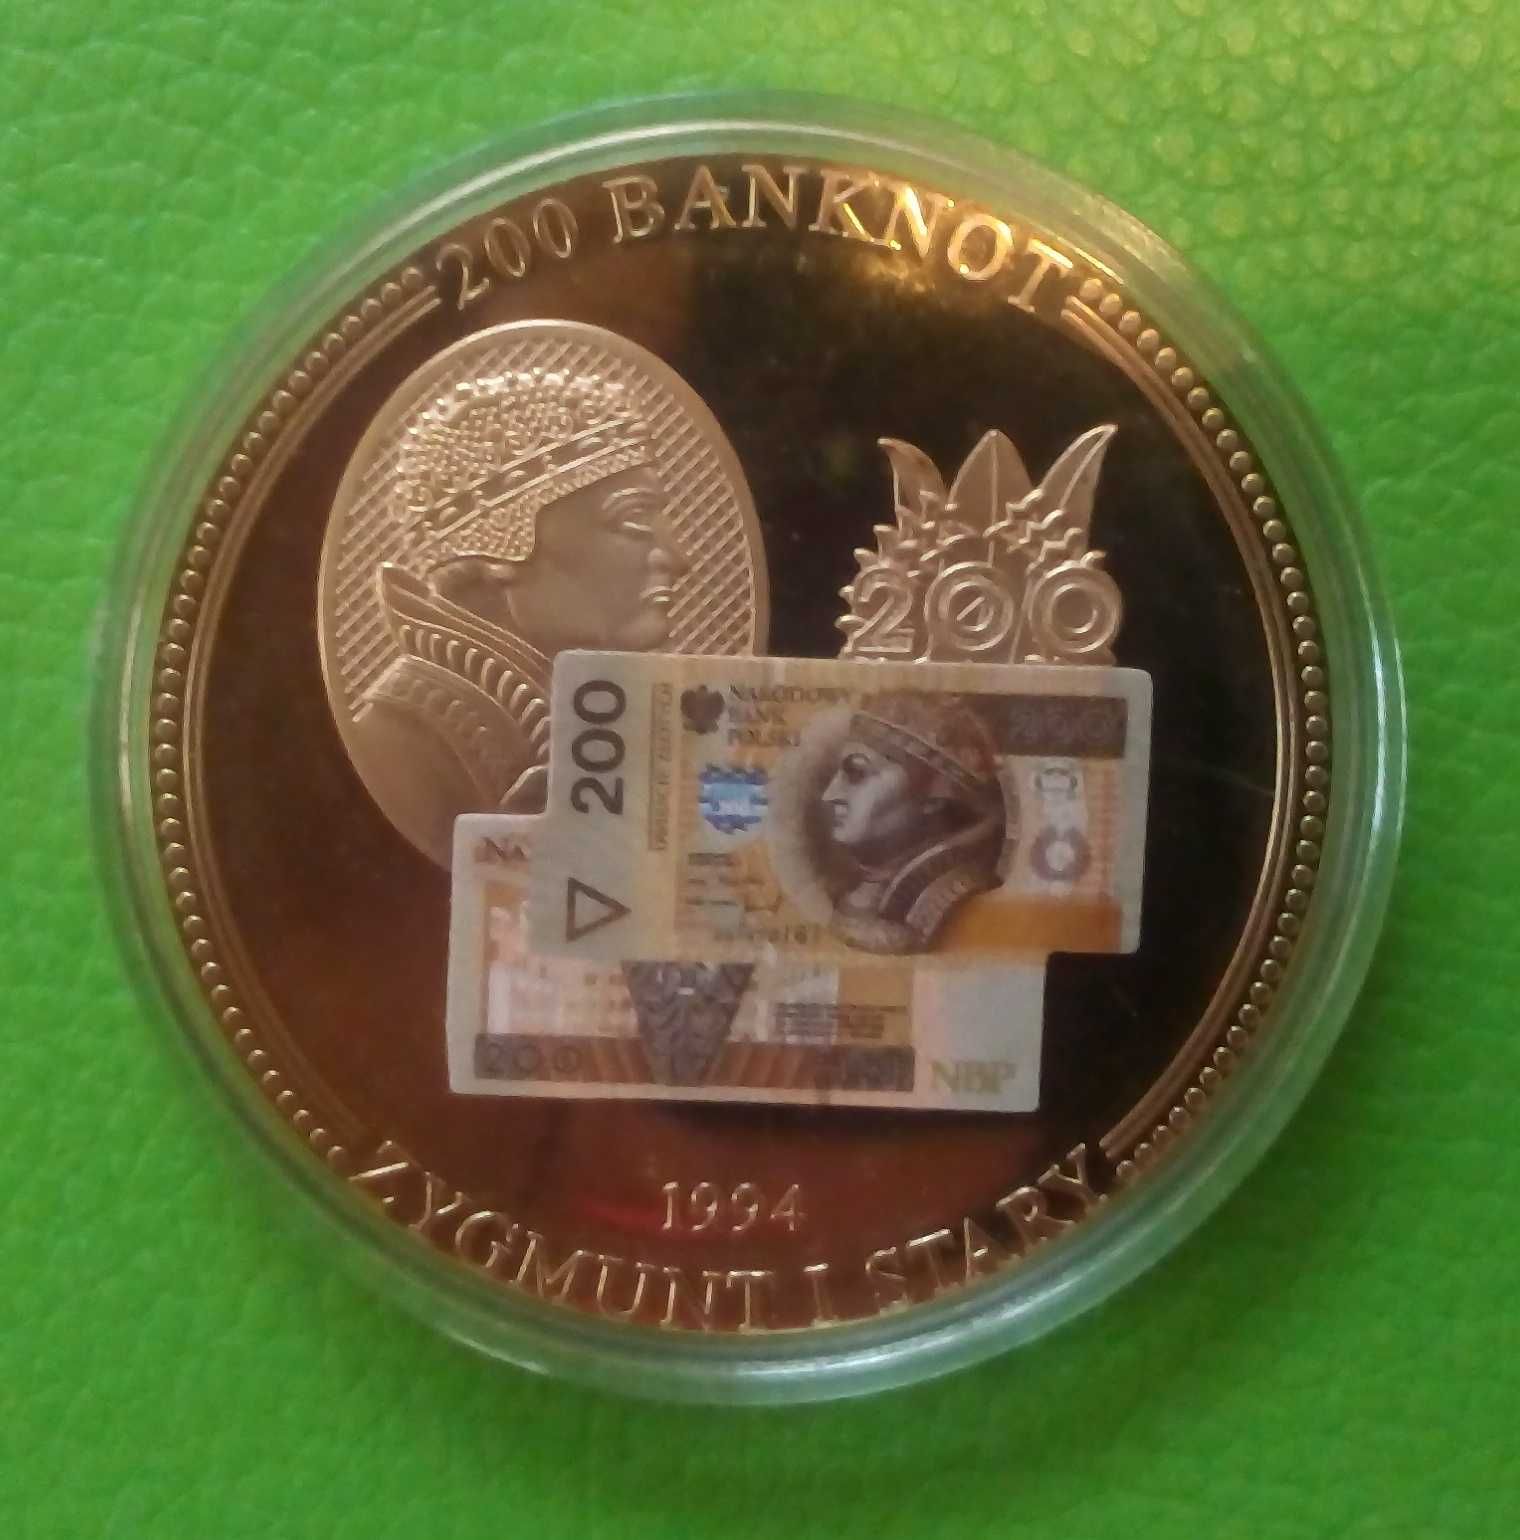 6 x Banknot Medal Mieszko Chrobry Paweł Kazimierz Zygmunt Jagiełło CER